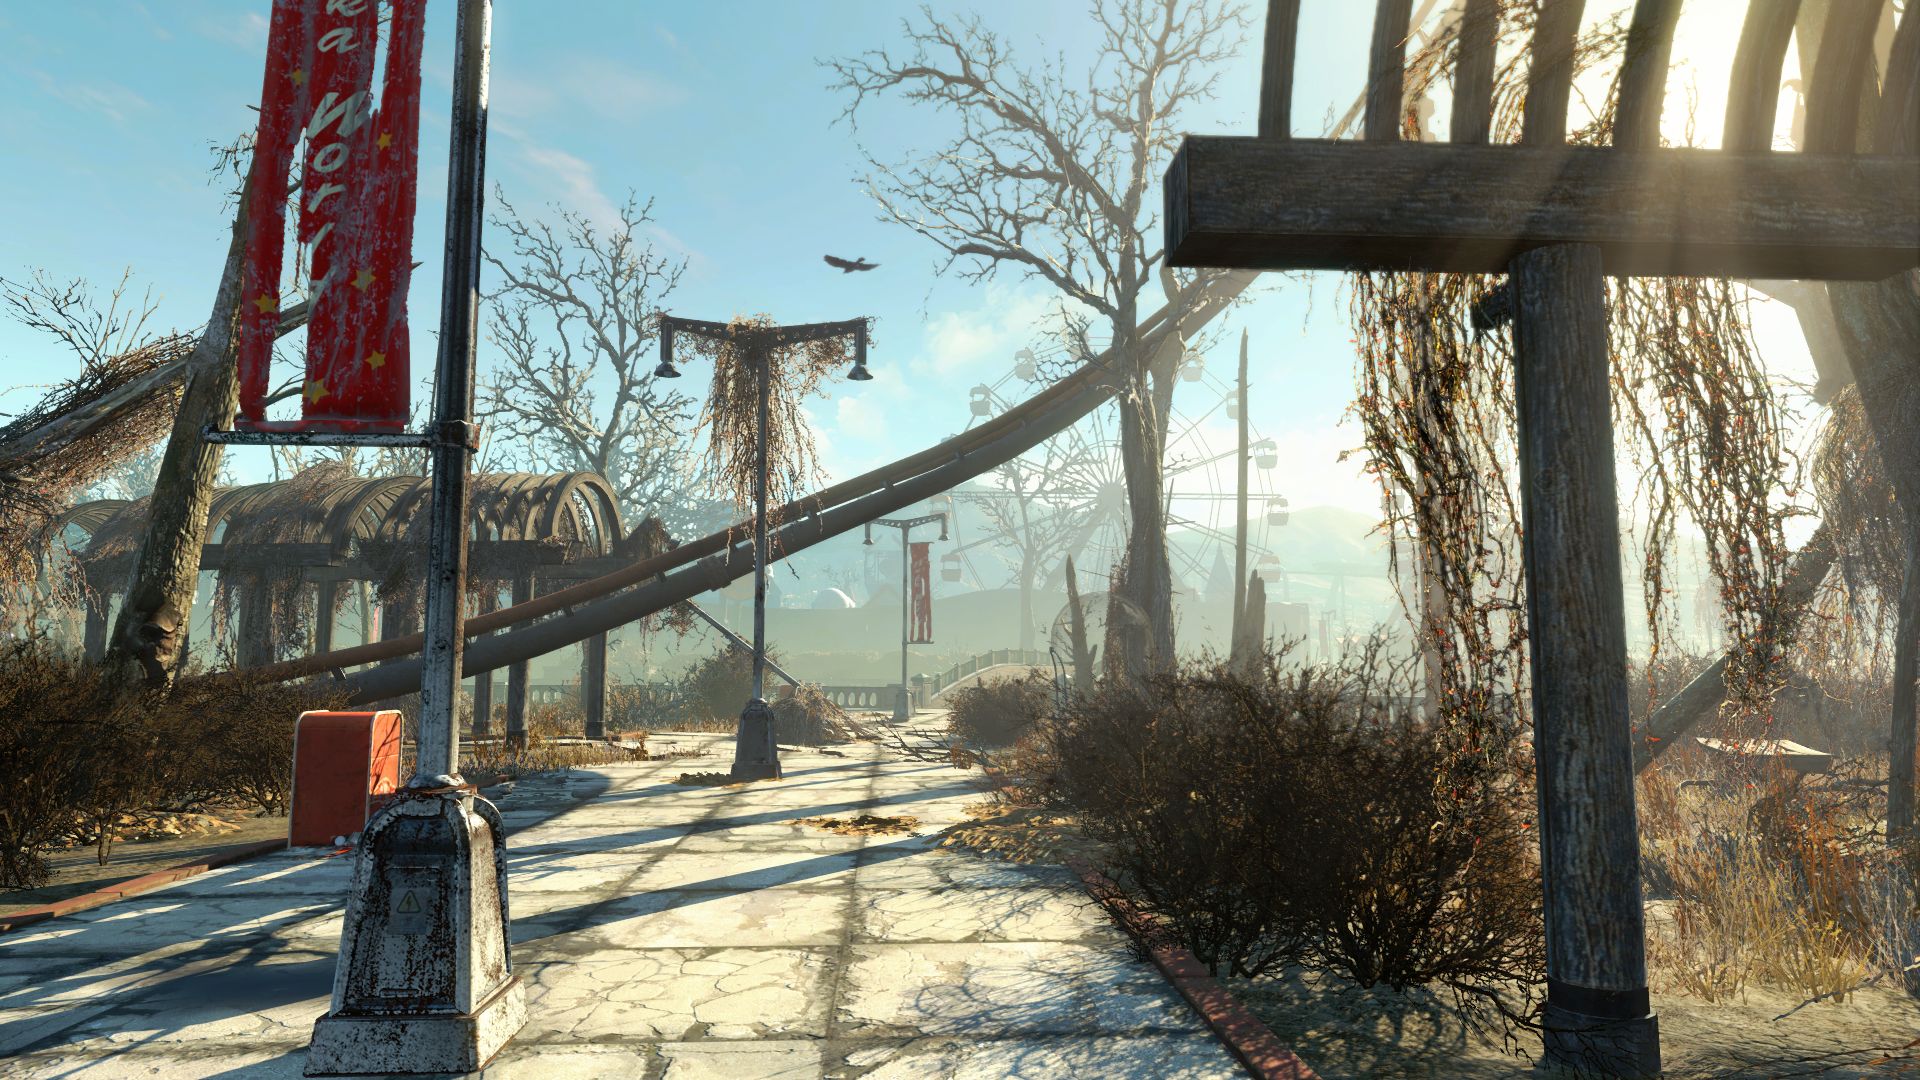 Descargar fondos de escritorio de Fallout 4: Mundo Nuka HD